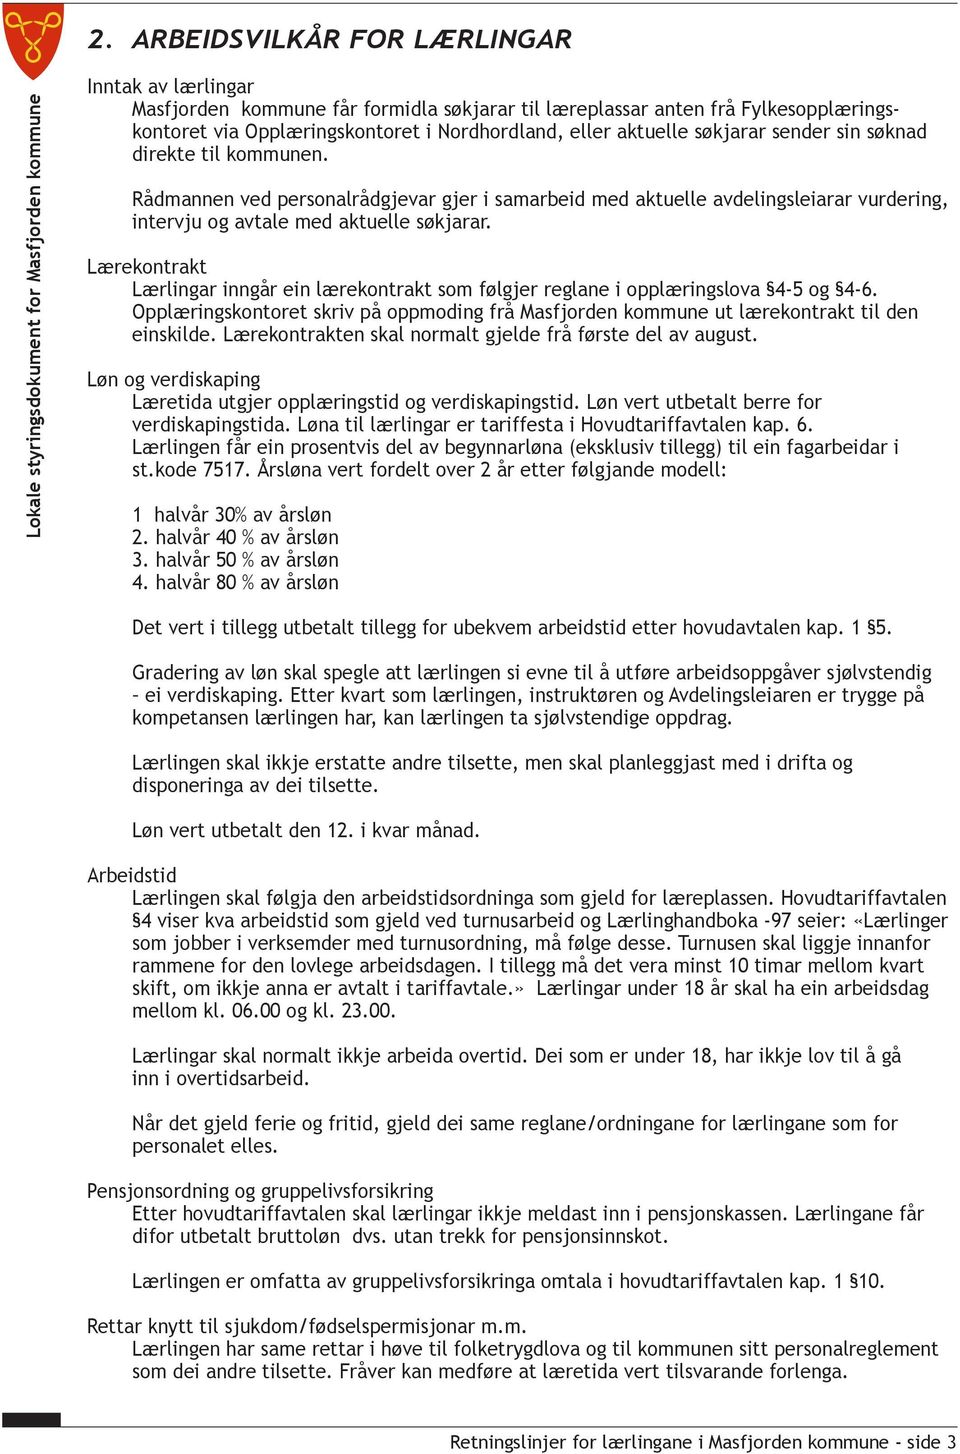 Lærekontrakt Lærlingar inngår ein lærekontrakt som følgjer reglane i opplæringslova 4-5 og 4-6. Opplæringskontoret skriv på oppmoding frå Masfjorden kommune ut lærekontrakt til den einskilde.